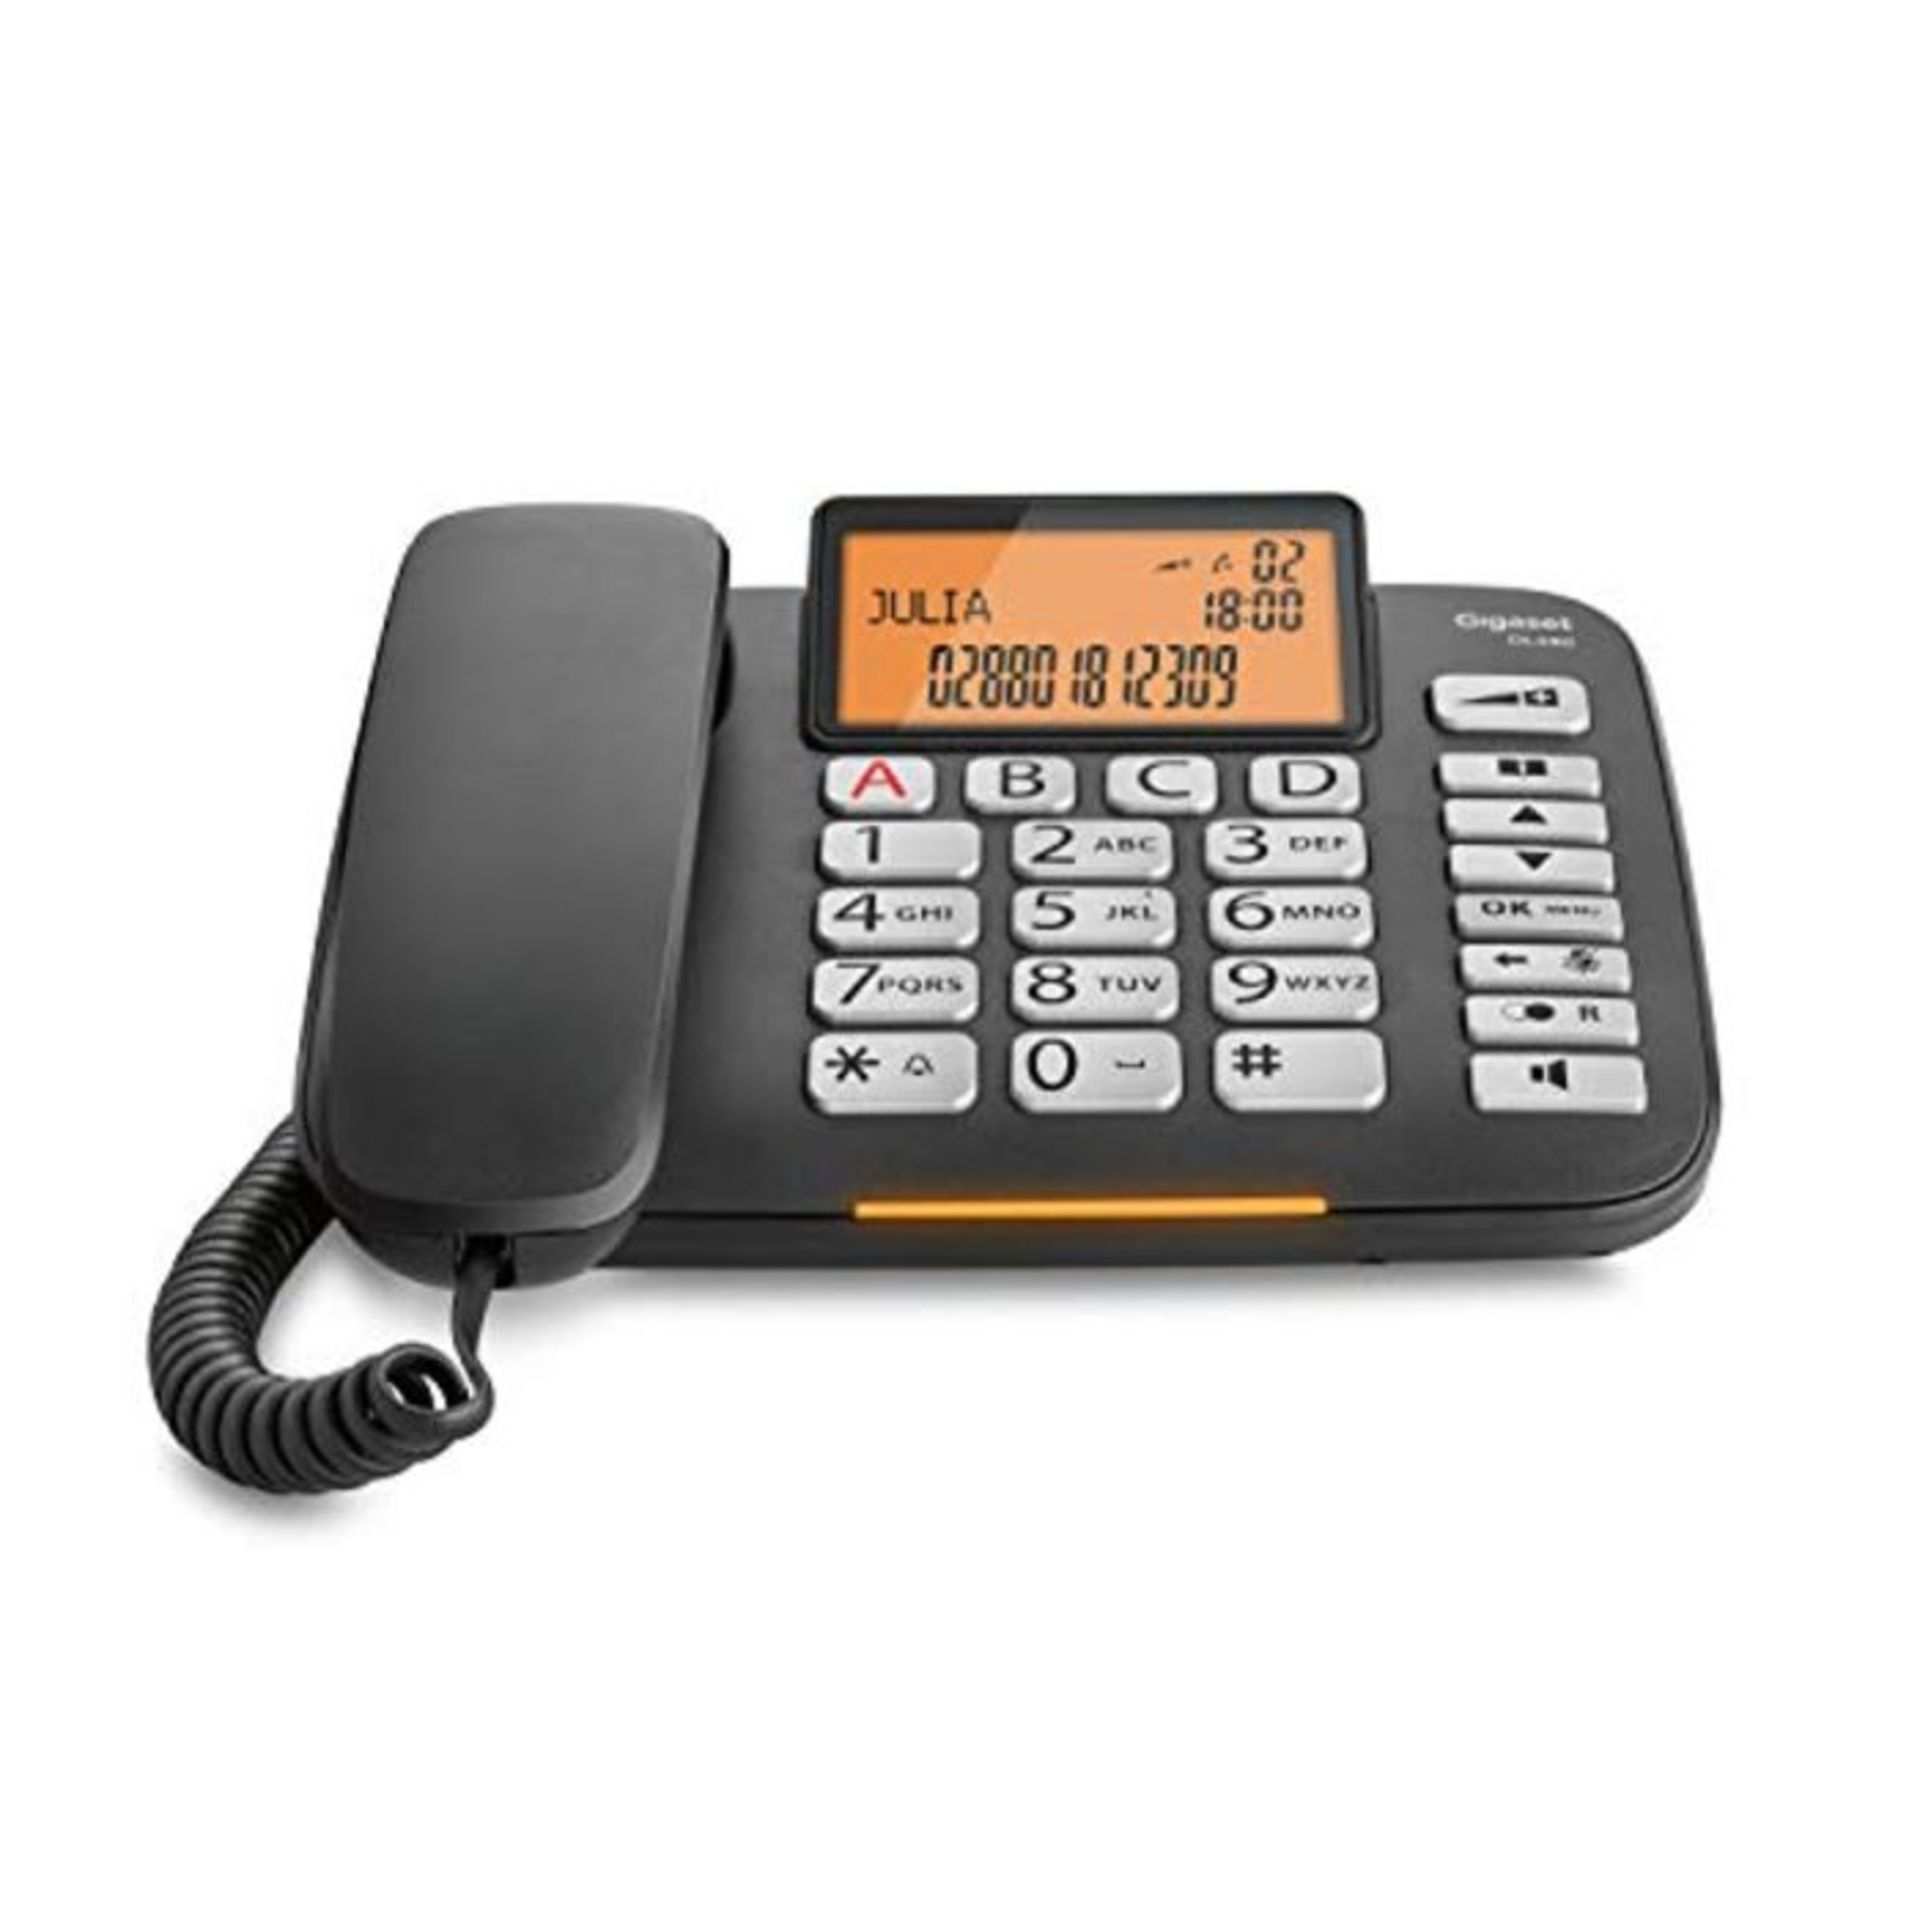 Gigaset DL580 telephone Analog telephone Black Caller ID - Telephones (Analog telephon